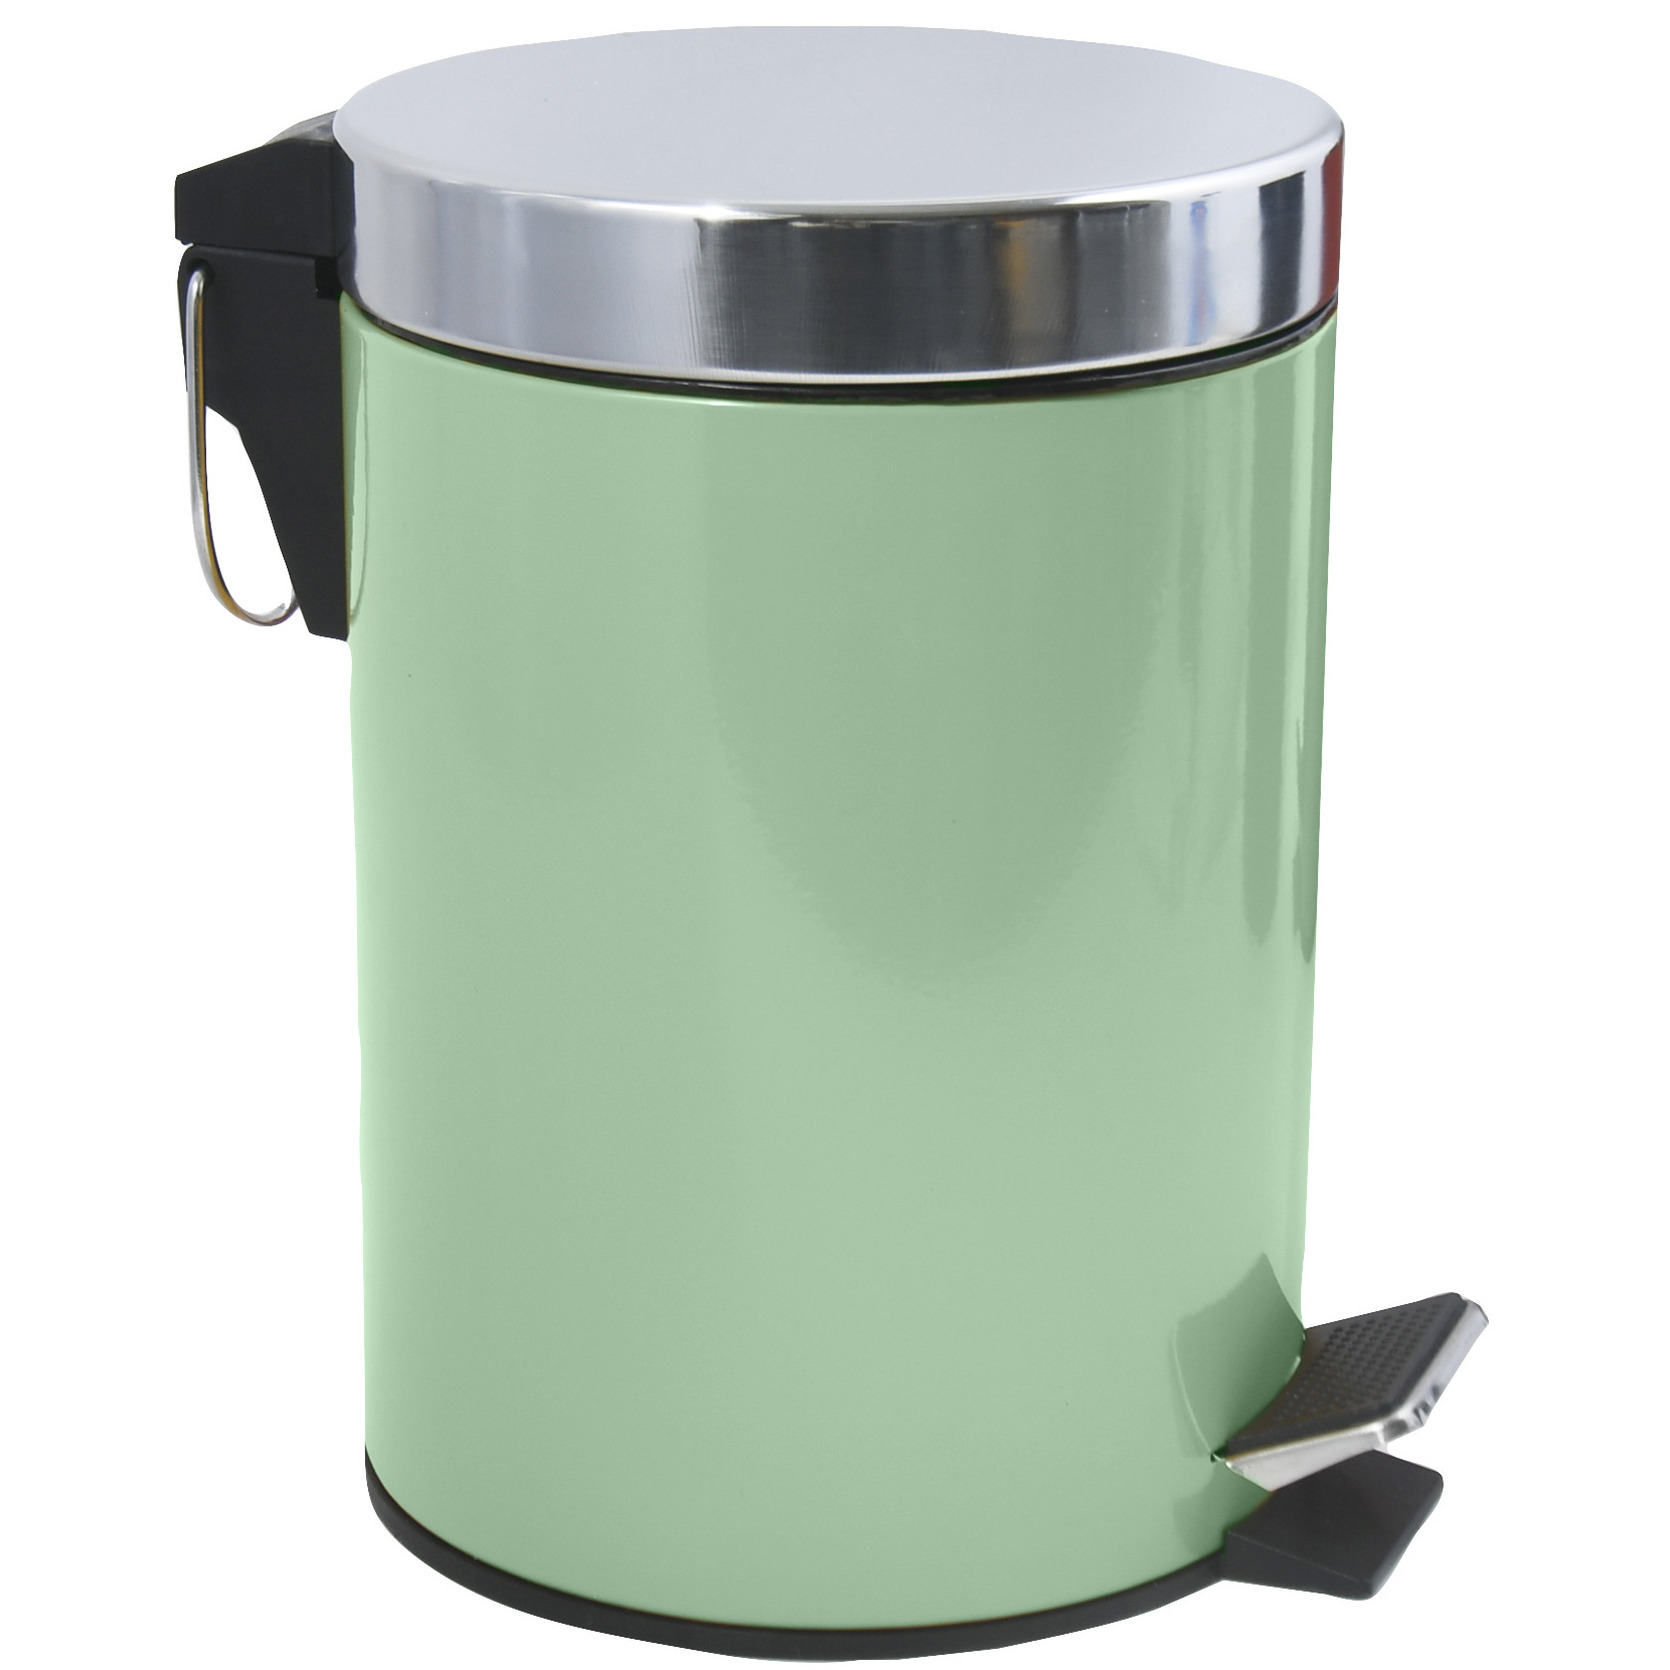 Prullenbak-pedaalemmer metaal groen 3 liter 17 x 25 cm Badkamer-toilet